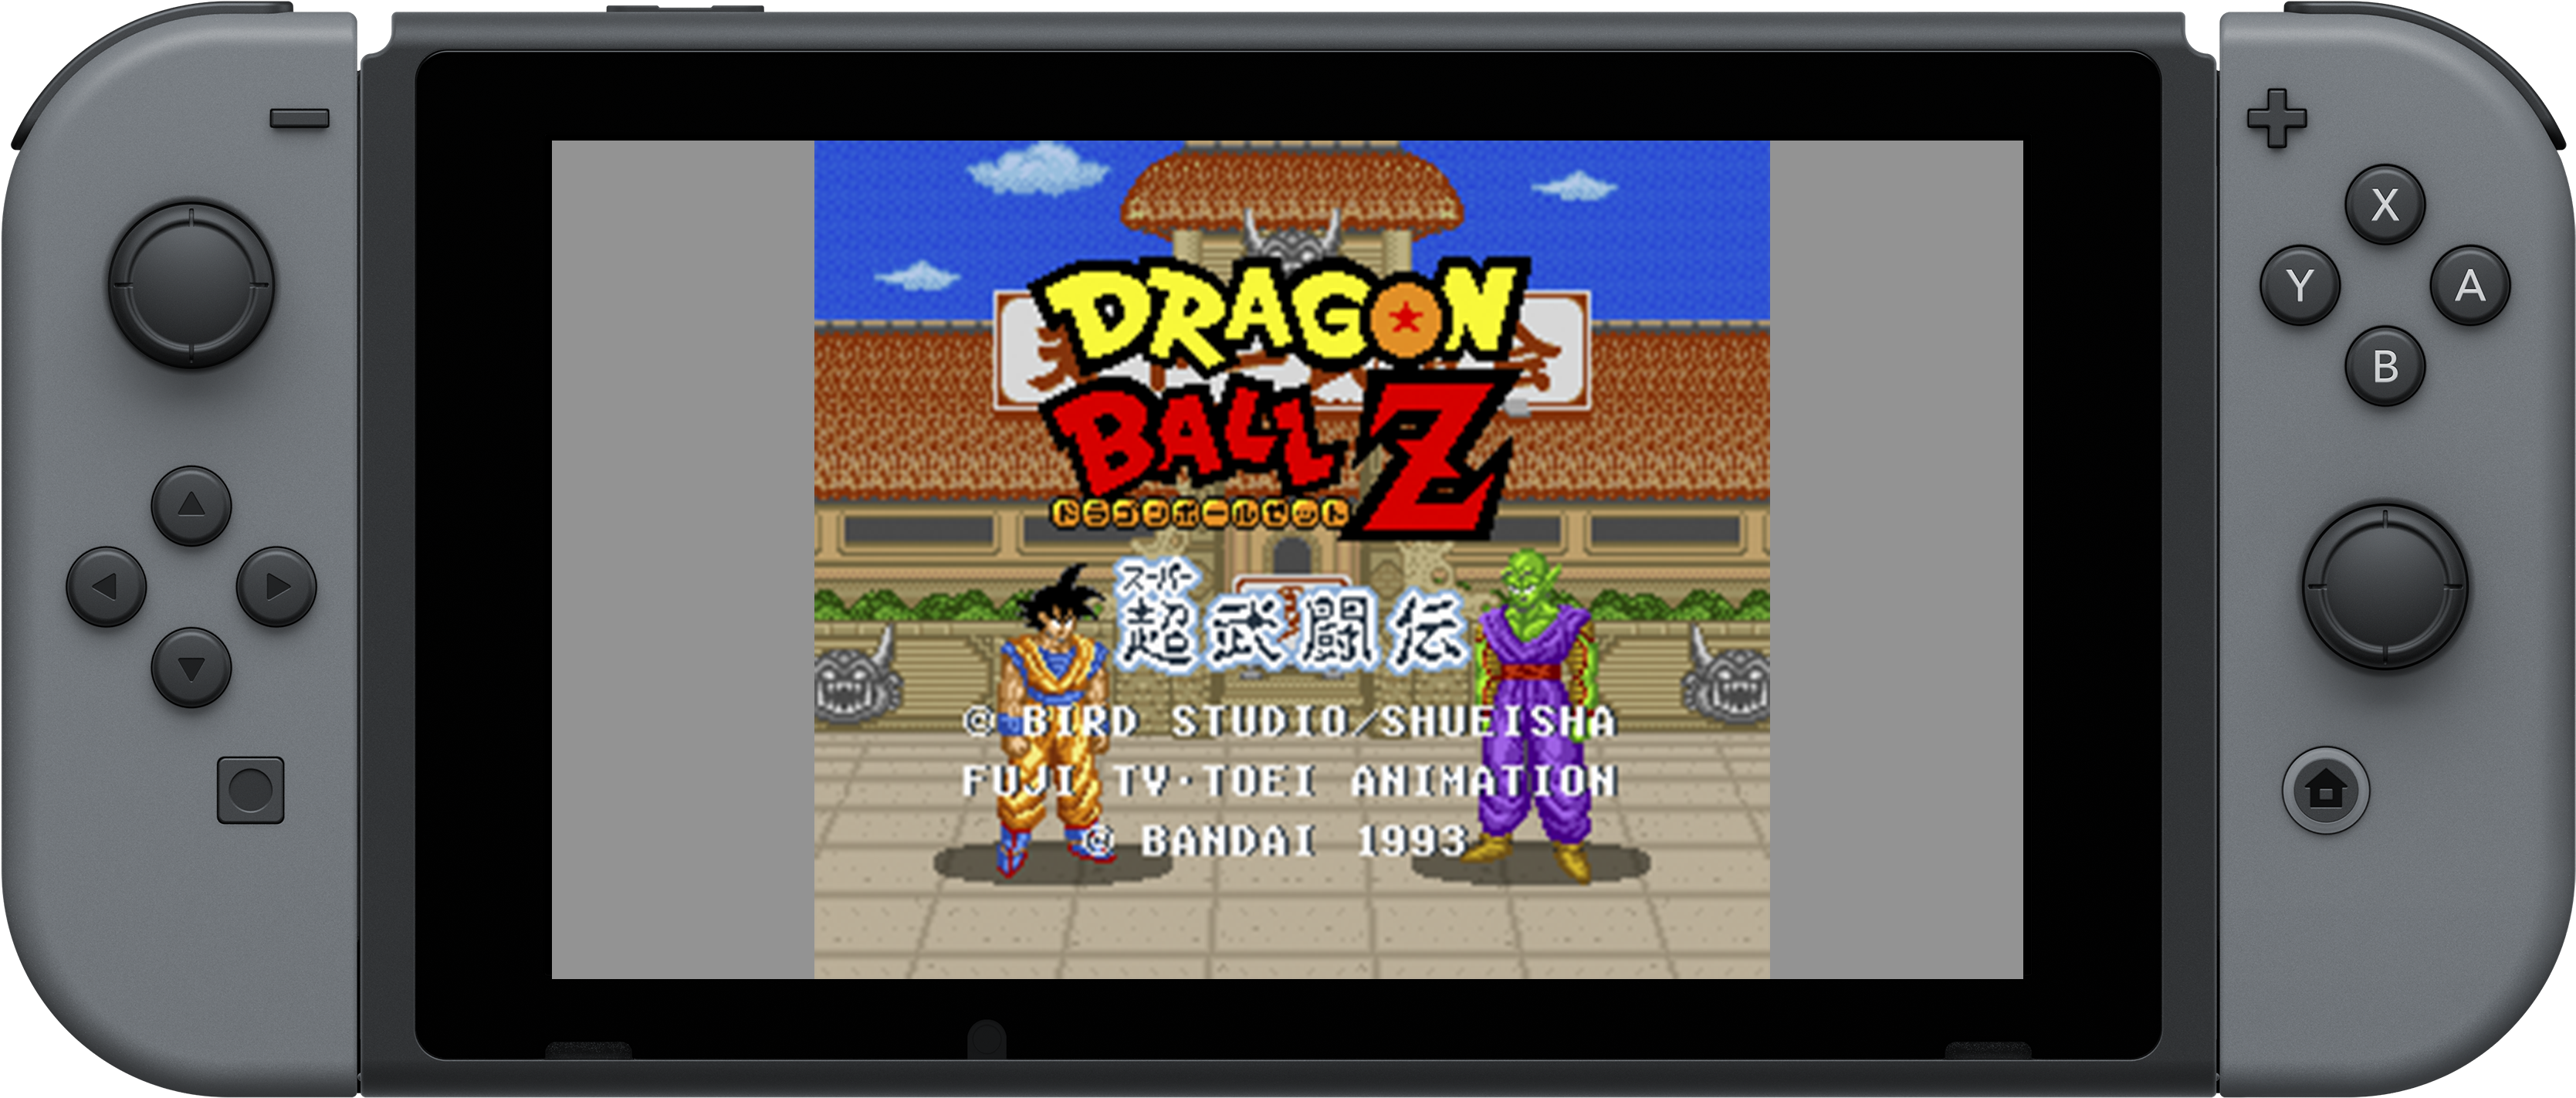 كشفت اليوم Bandai Namco عن تفاصيل نسخة البيتا الخاصة - Dragon Ball Z Super Butoden Switch (3571x2500), Png Download